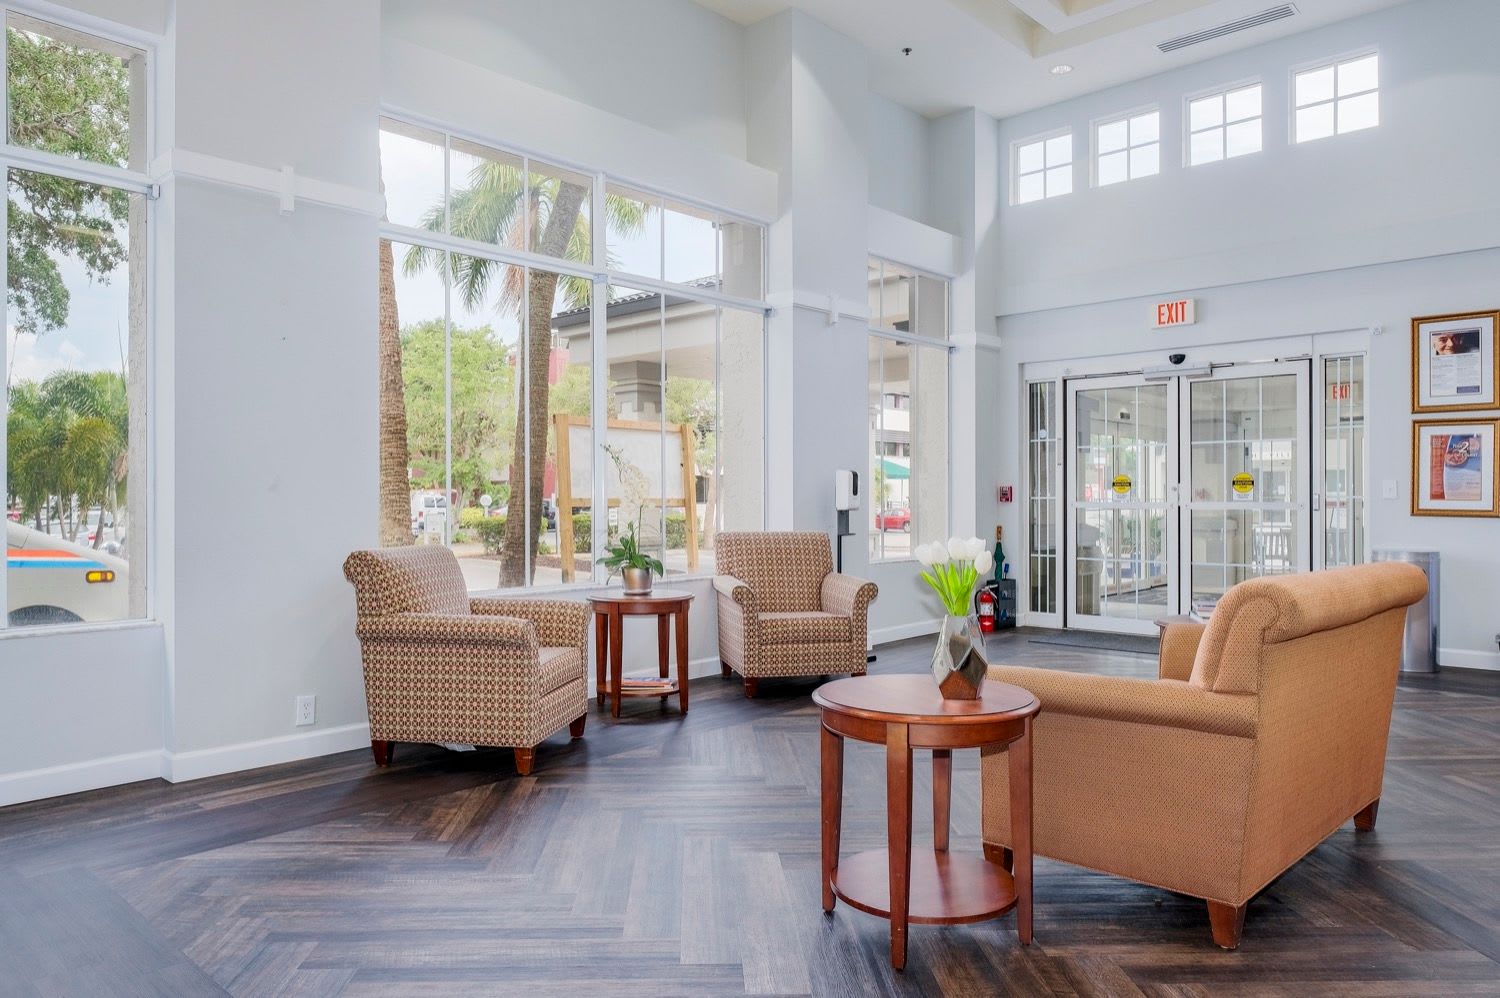 Lobby at Grand Villa of Sarasota